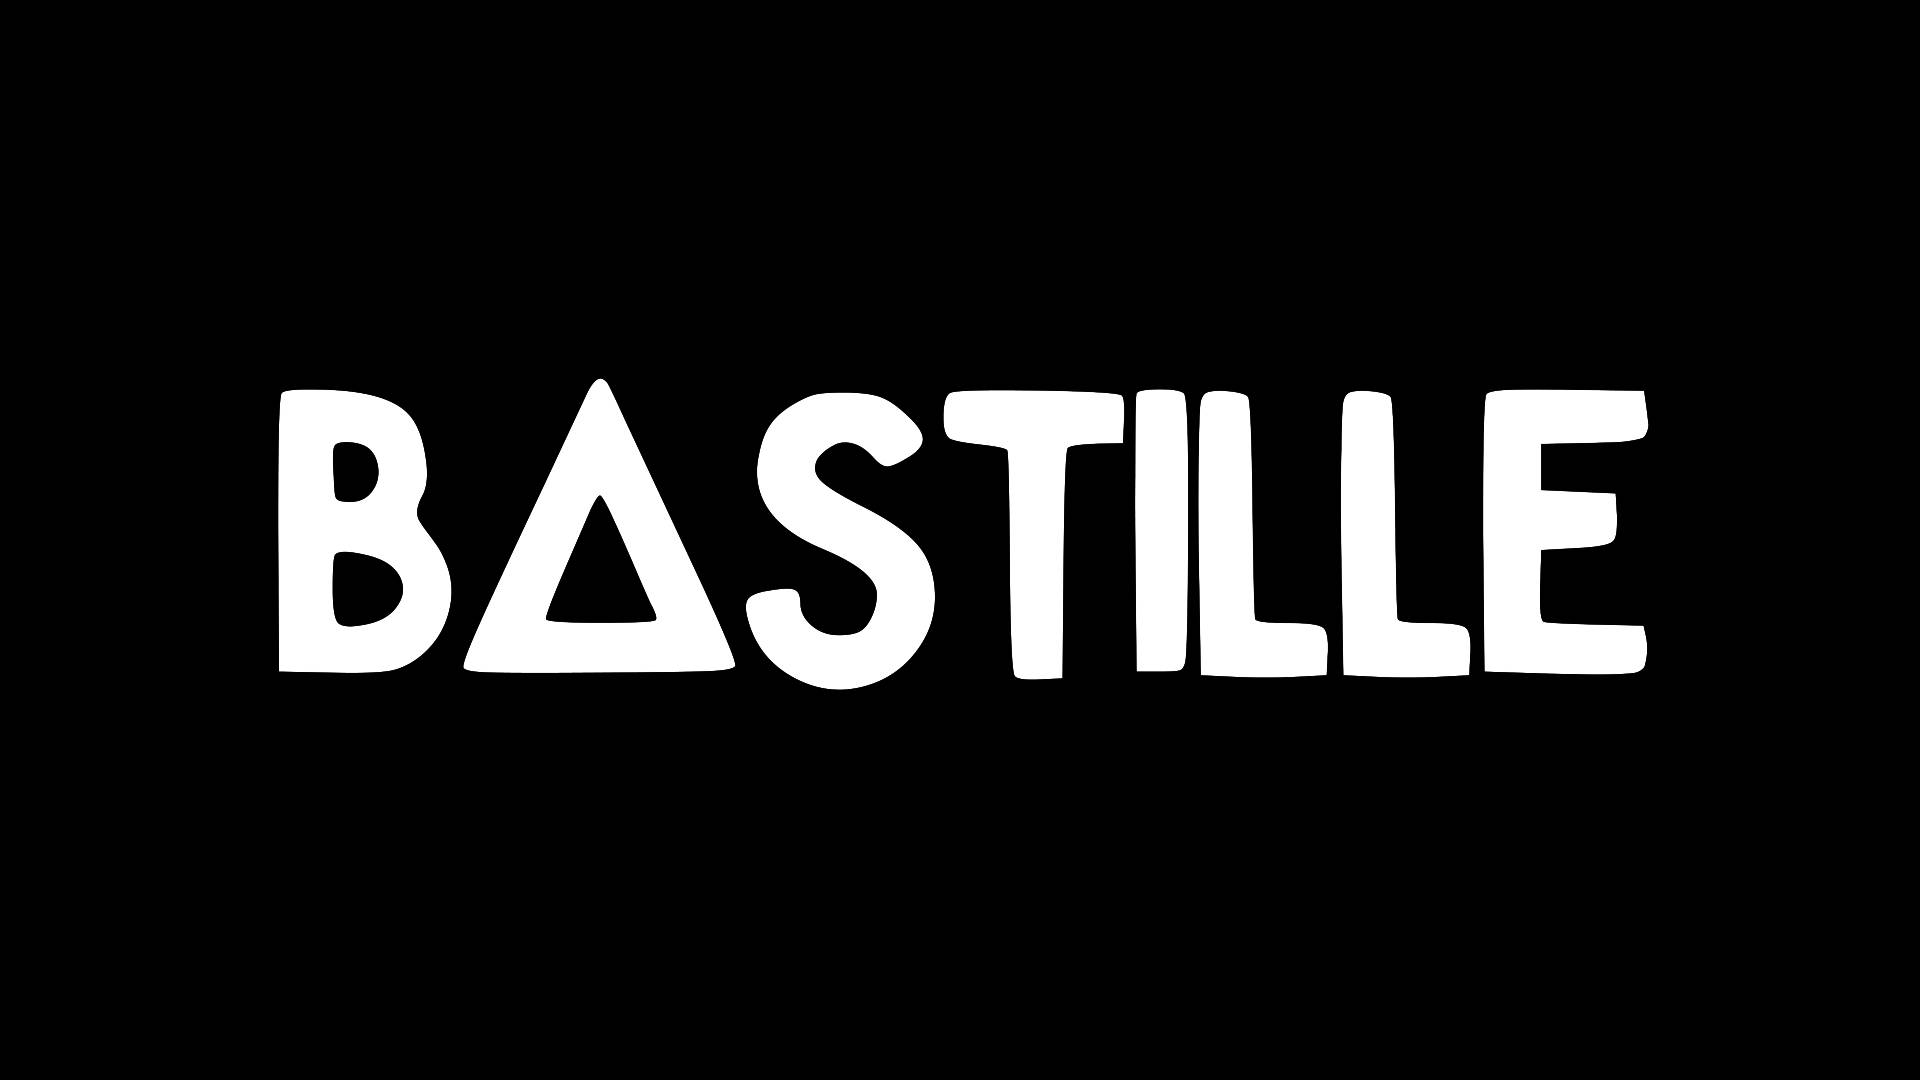 Bastille Basic Logo Wallpaper